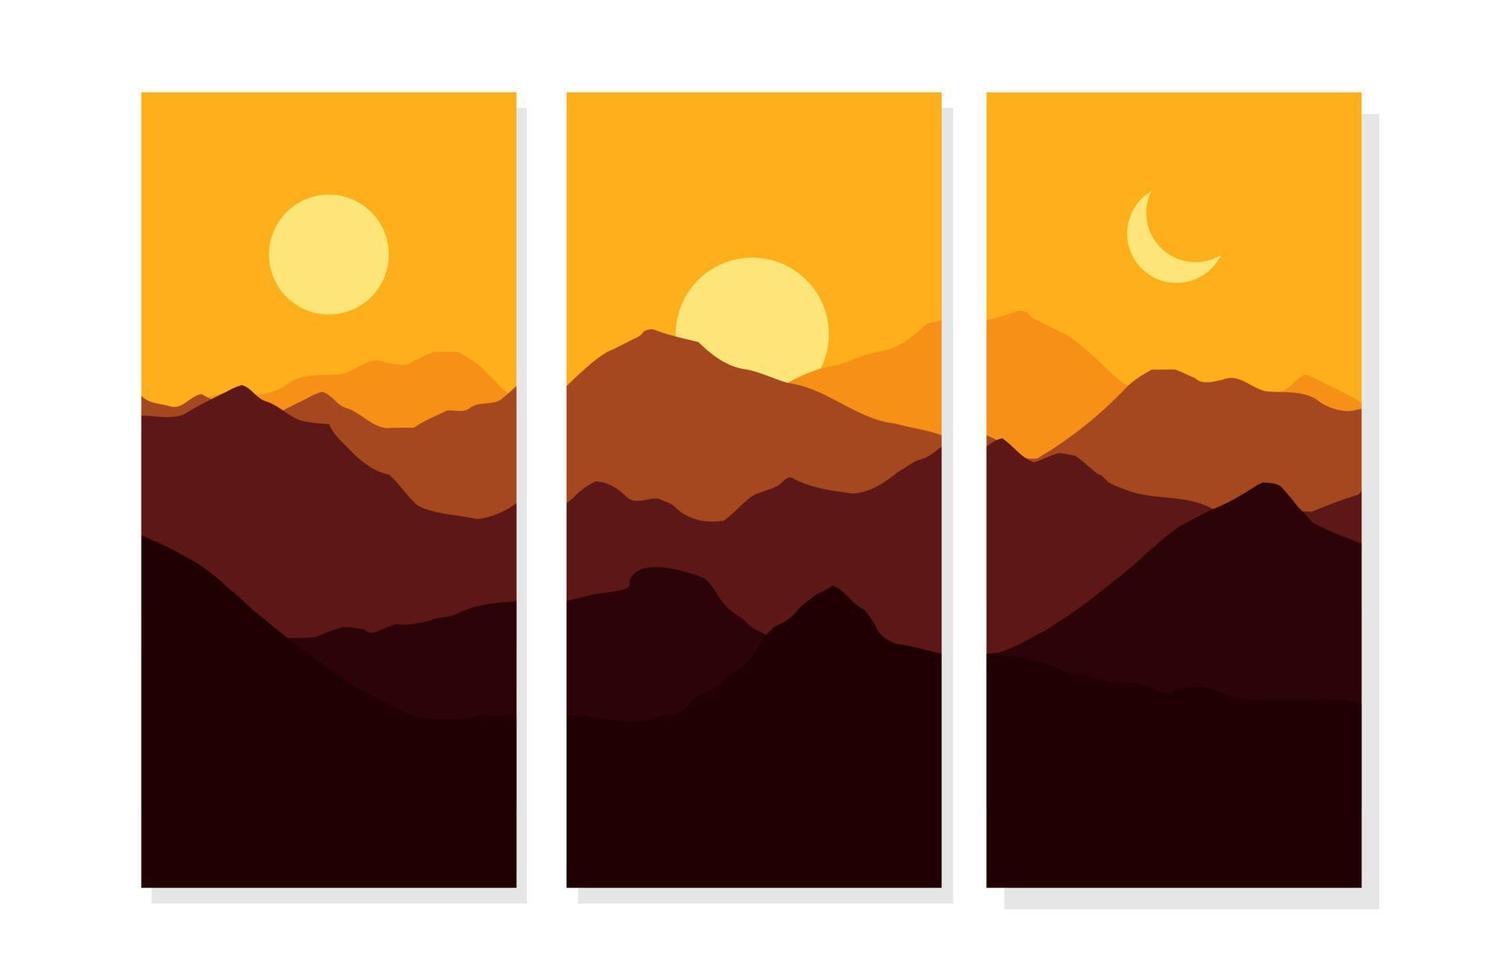 paisagem de dia e noite, paisagem de montanha com lua, sol, design plano de ilustração vetorial vetor